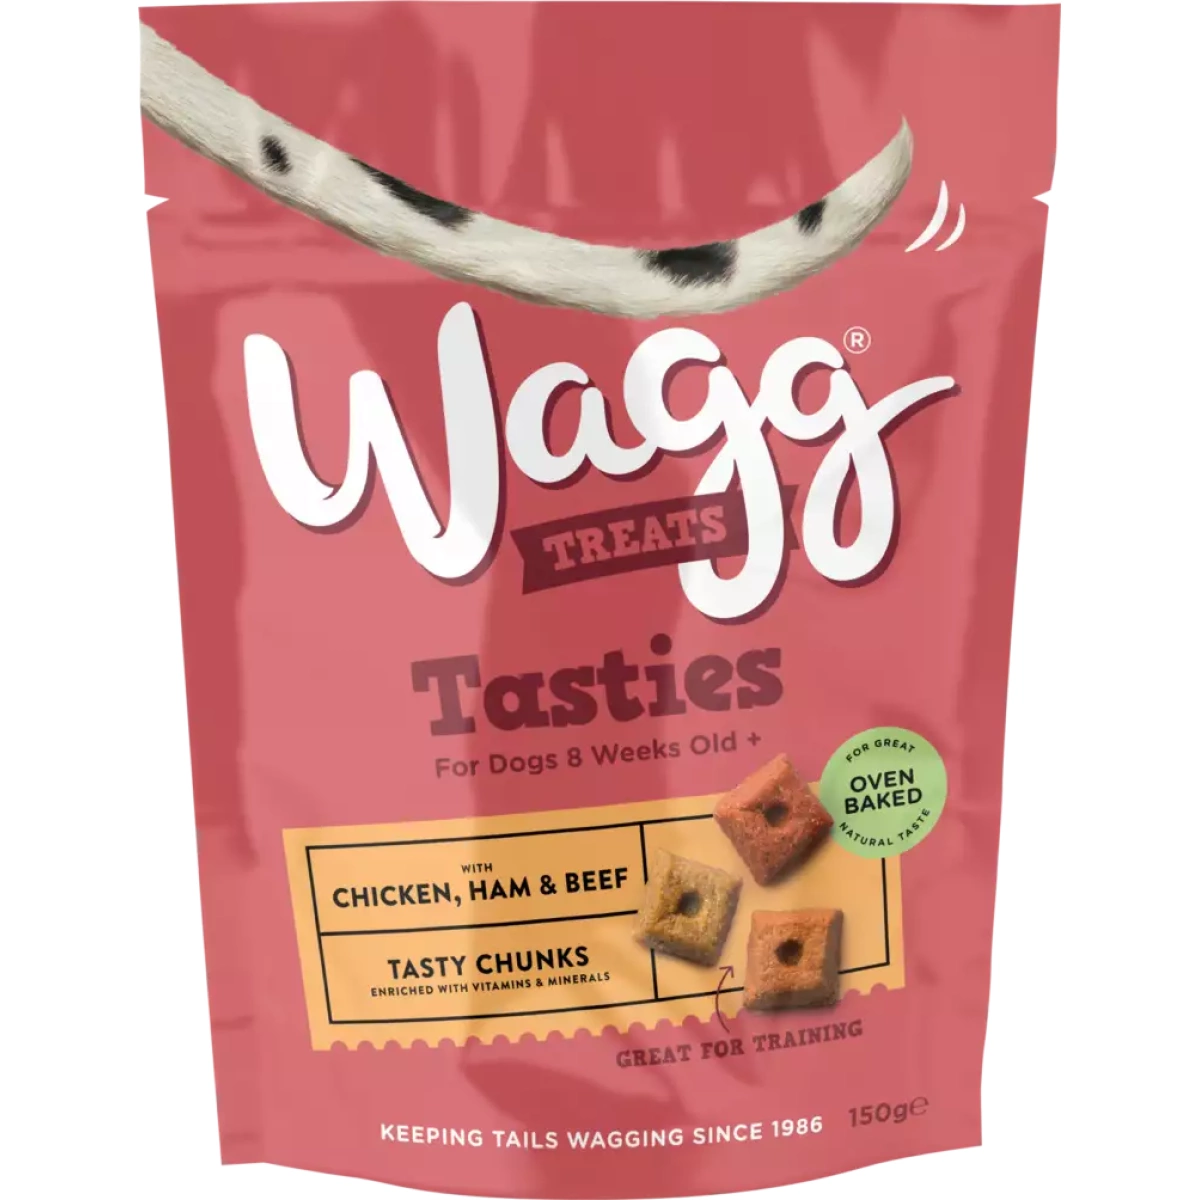 Wagg Dog Treats - Tasty Chunks 125g Main Image